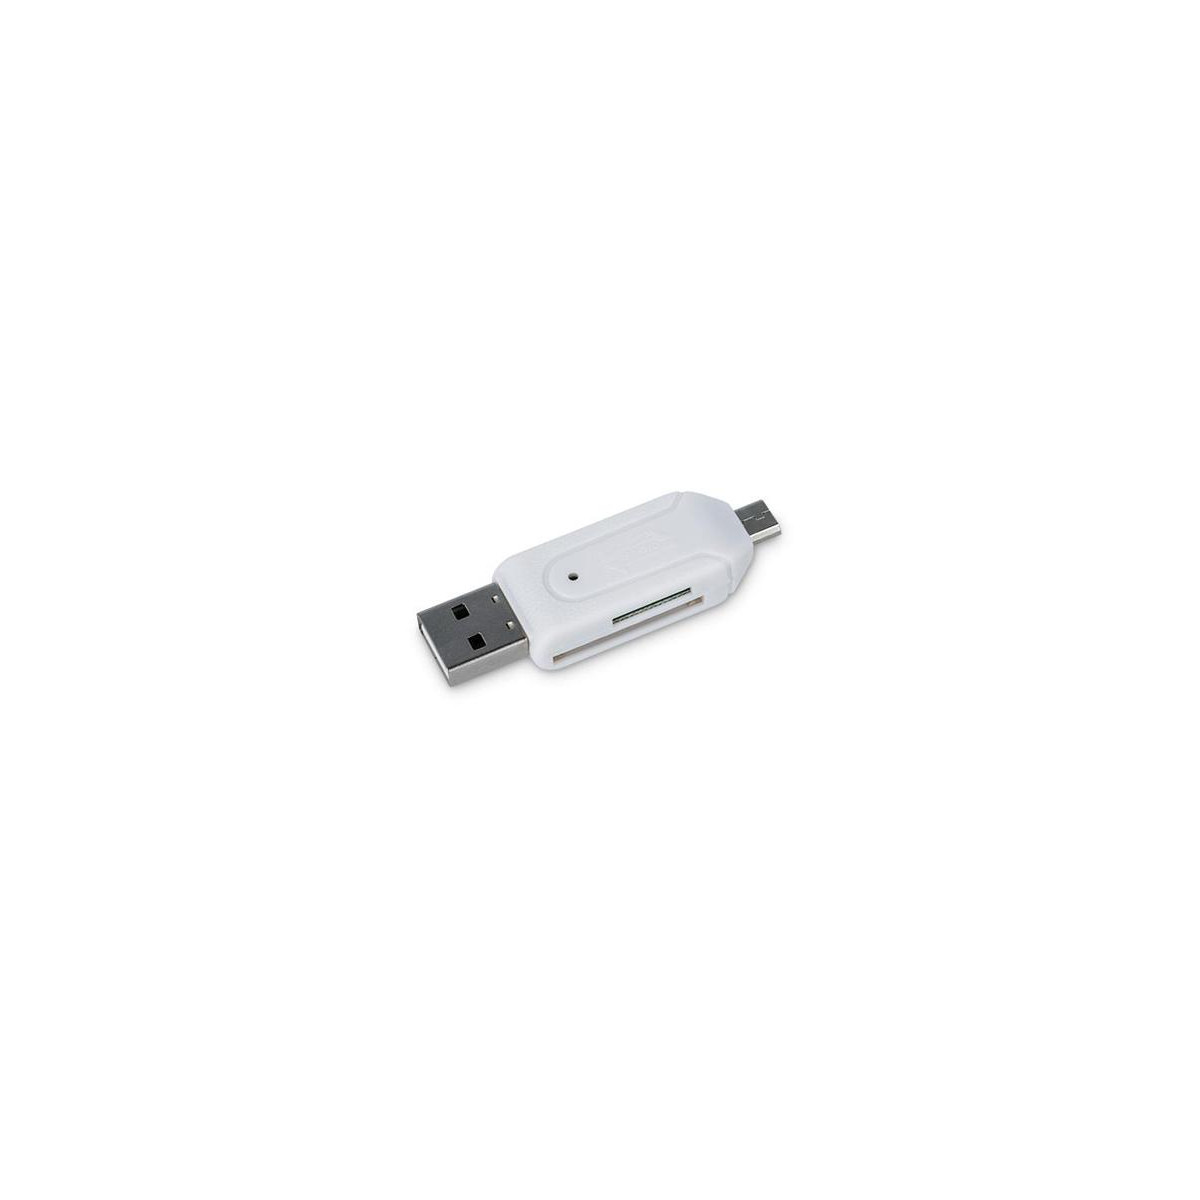 Čtečka paměťových karet FOREVER Micro USB/USB